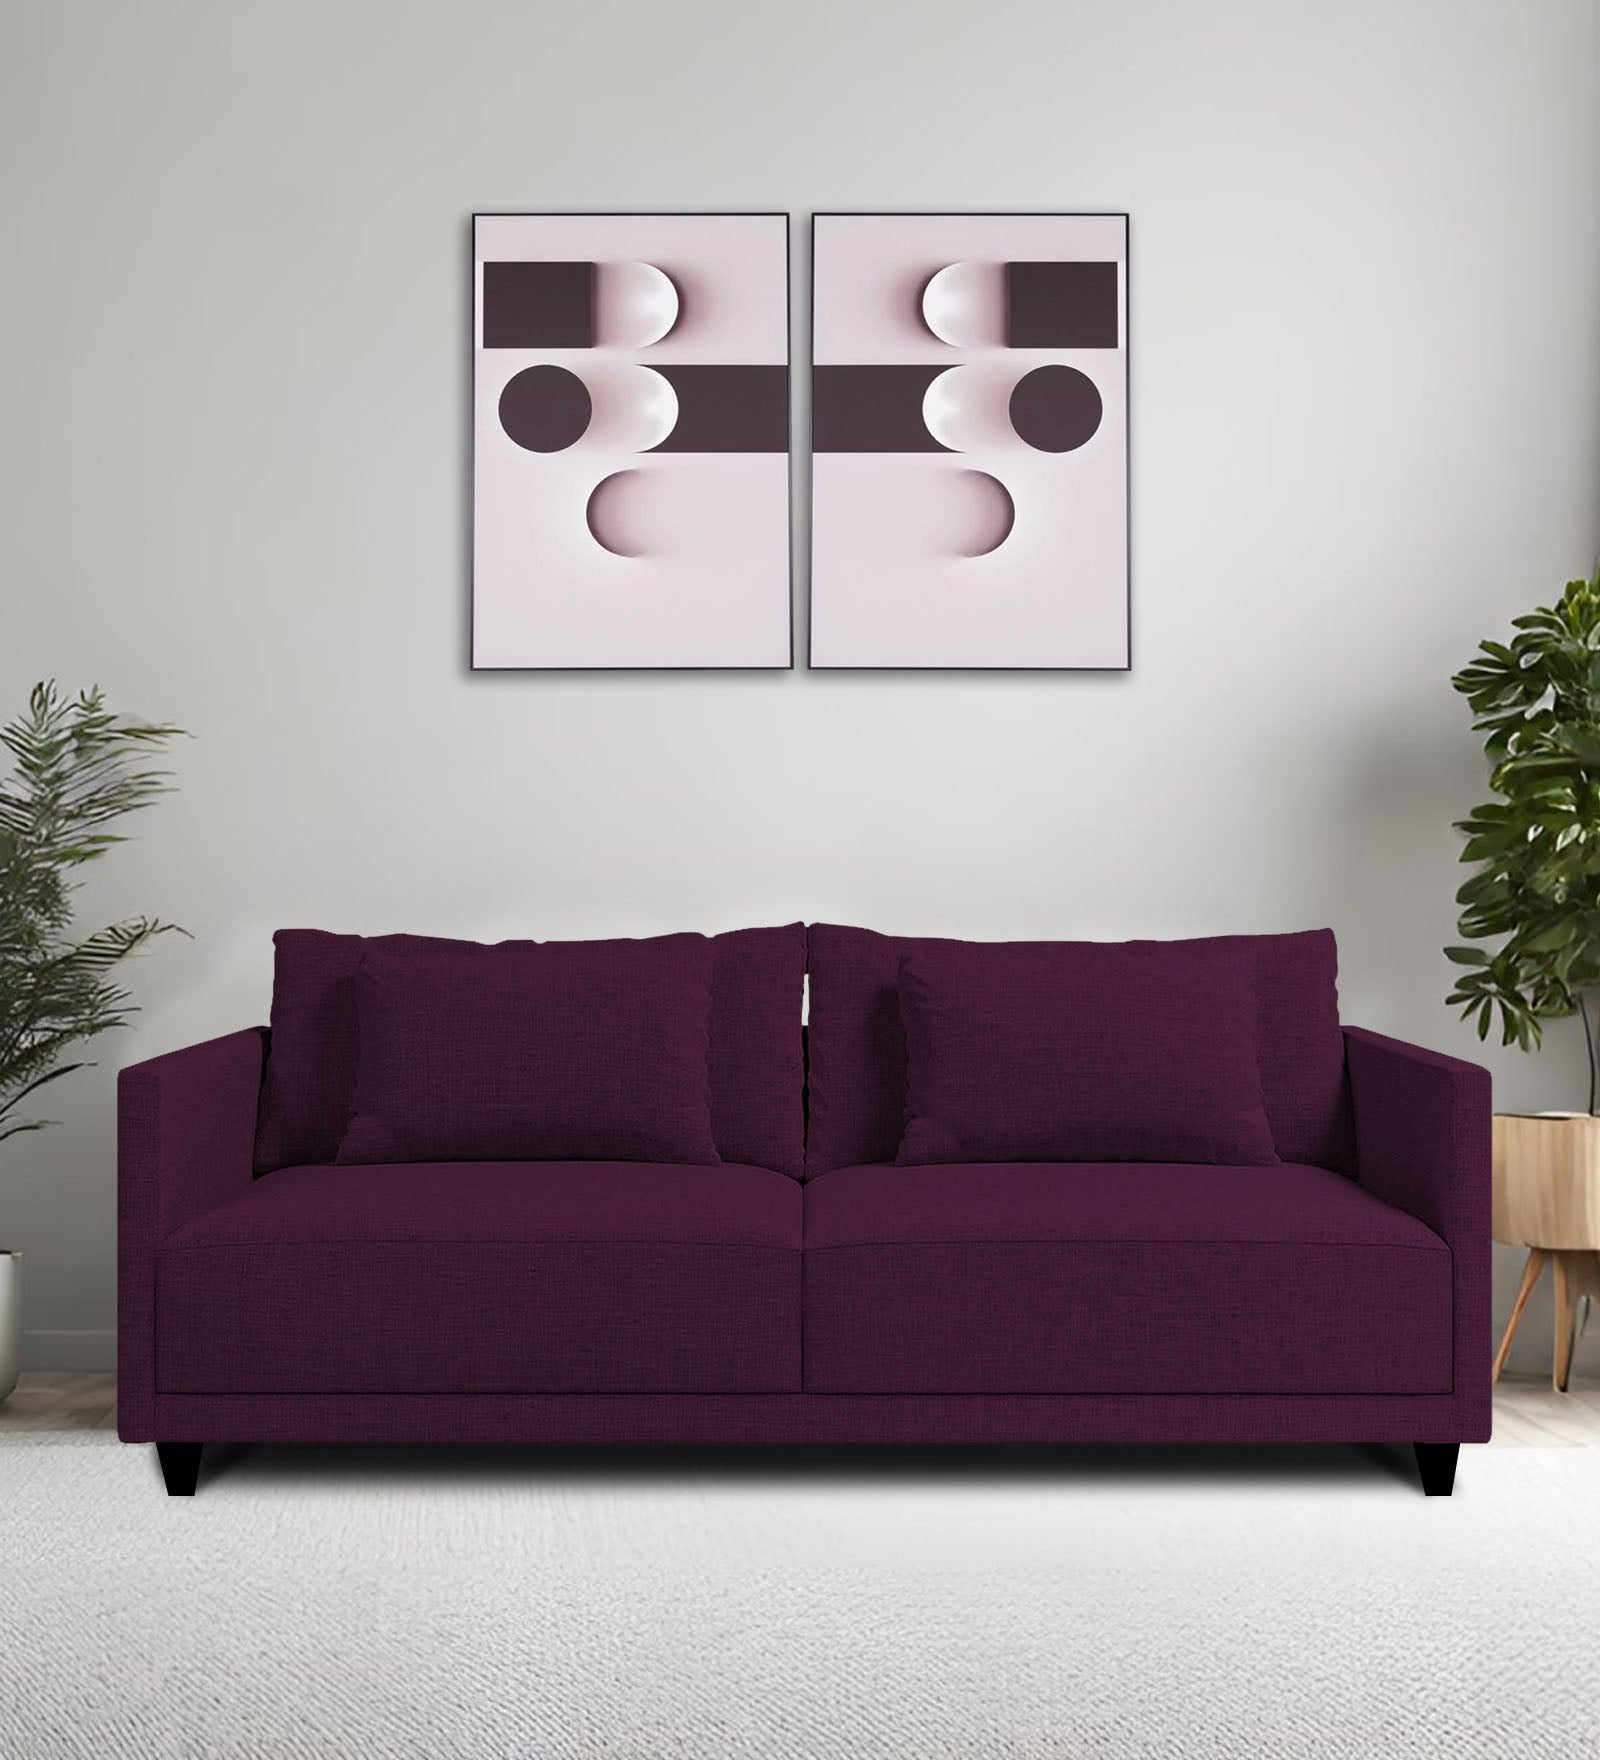 Kera Fabric 2 Seater Sofa in Greek Purple Colour